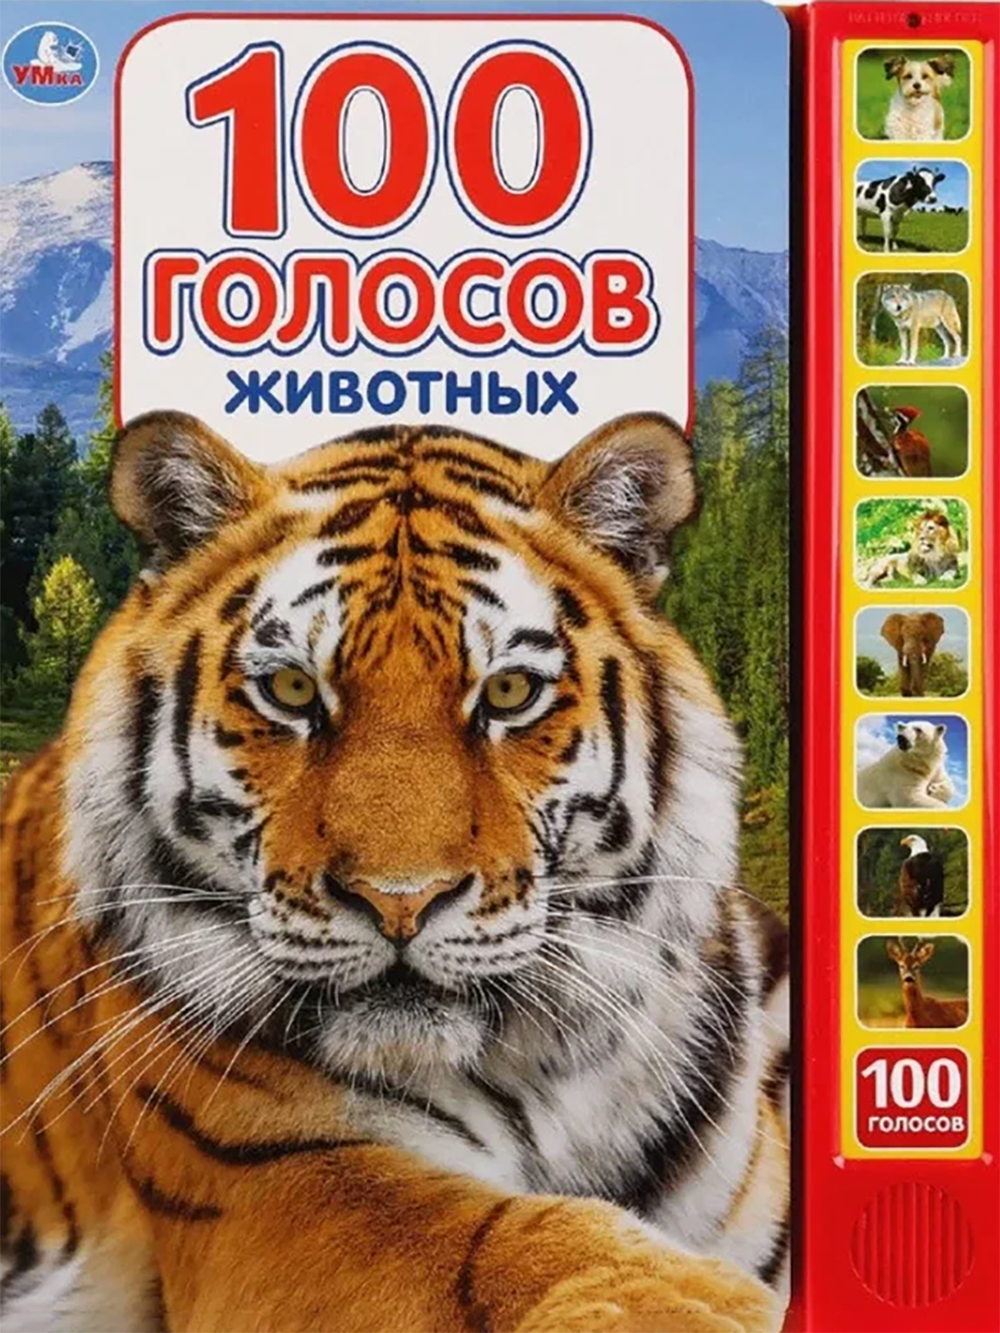 Книжка для&nbsp;сына. Будем изучать звуки, которые издают животные. Источник: umitoy.ru